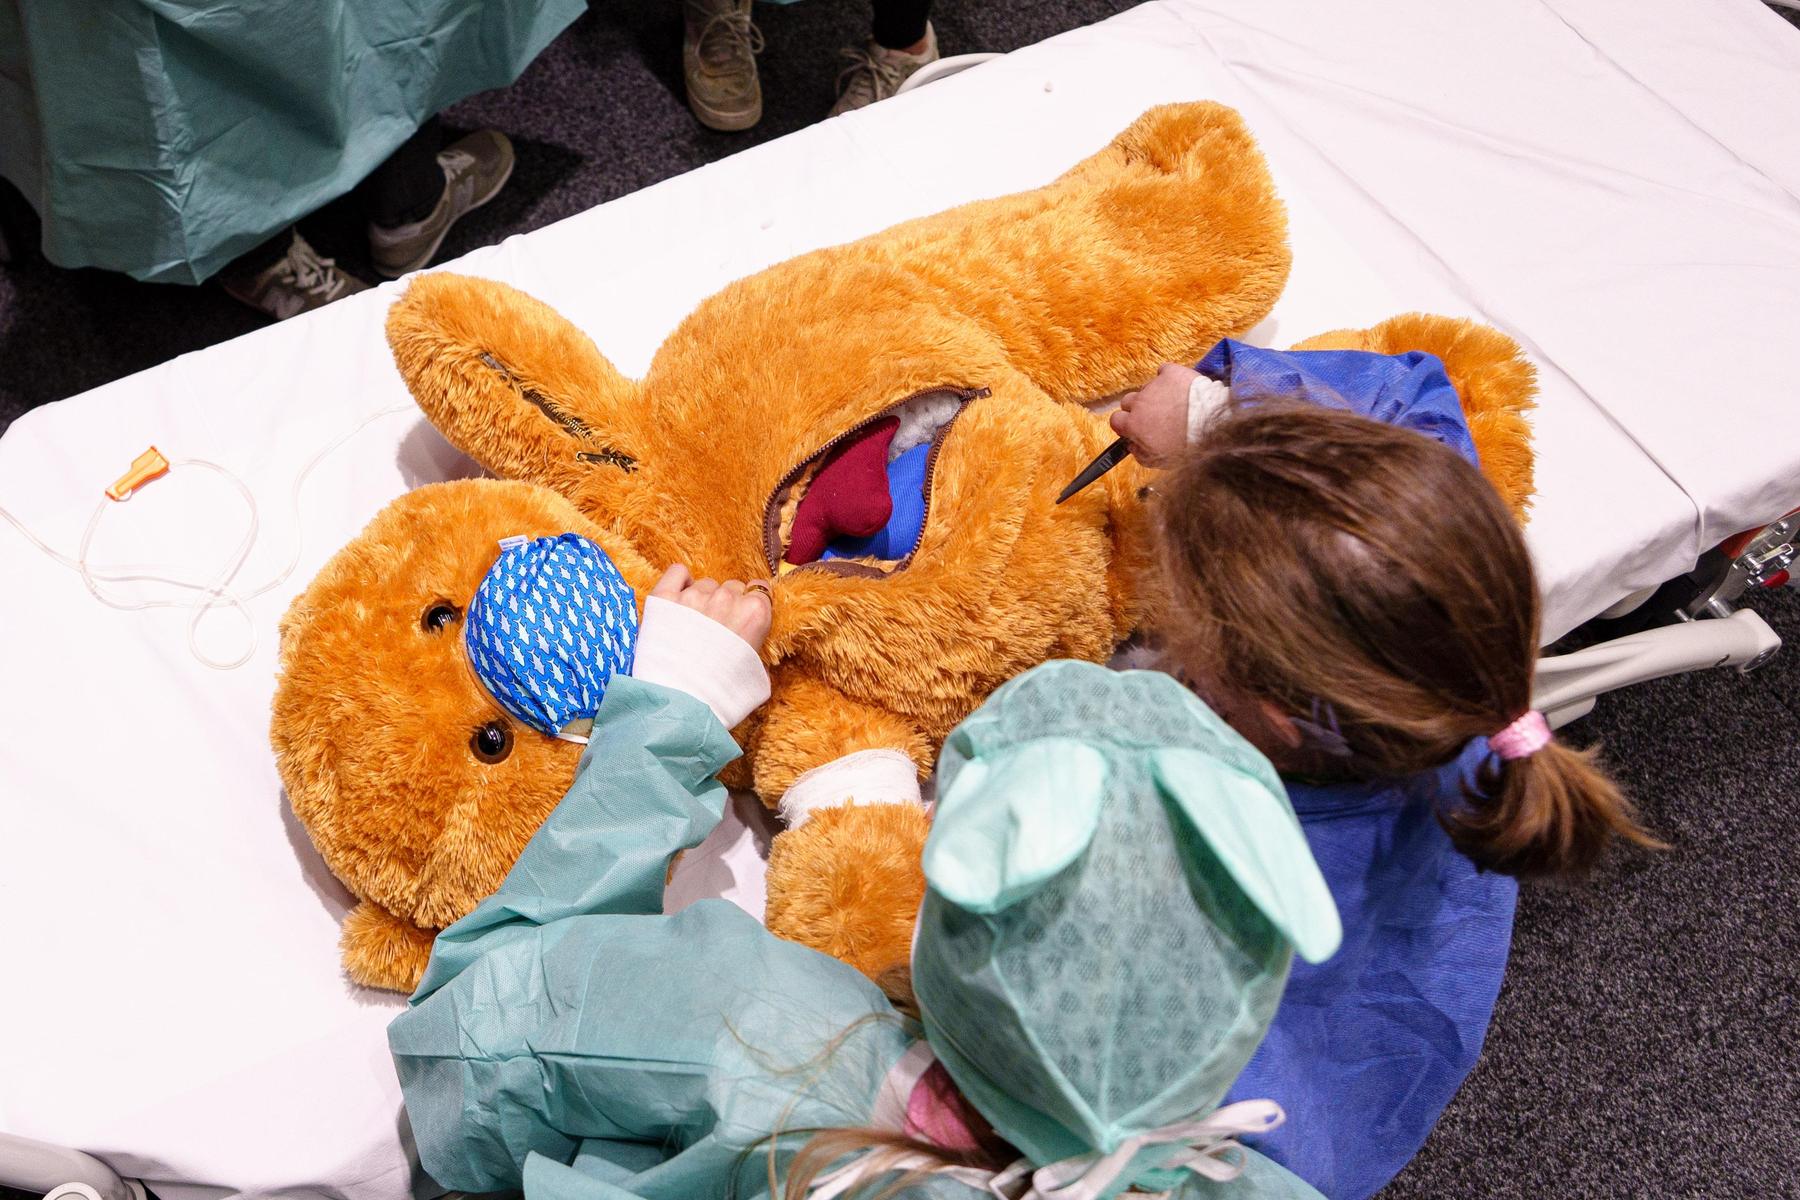 Teddy-Krankenhaus: Wenn der Teddy operiert werden muss